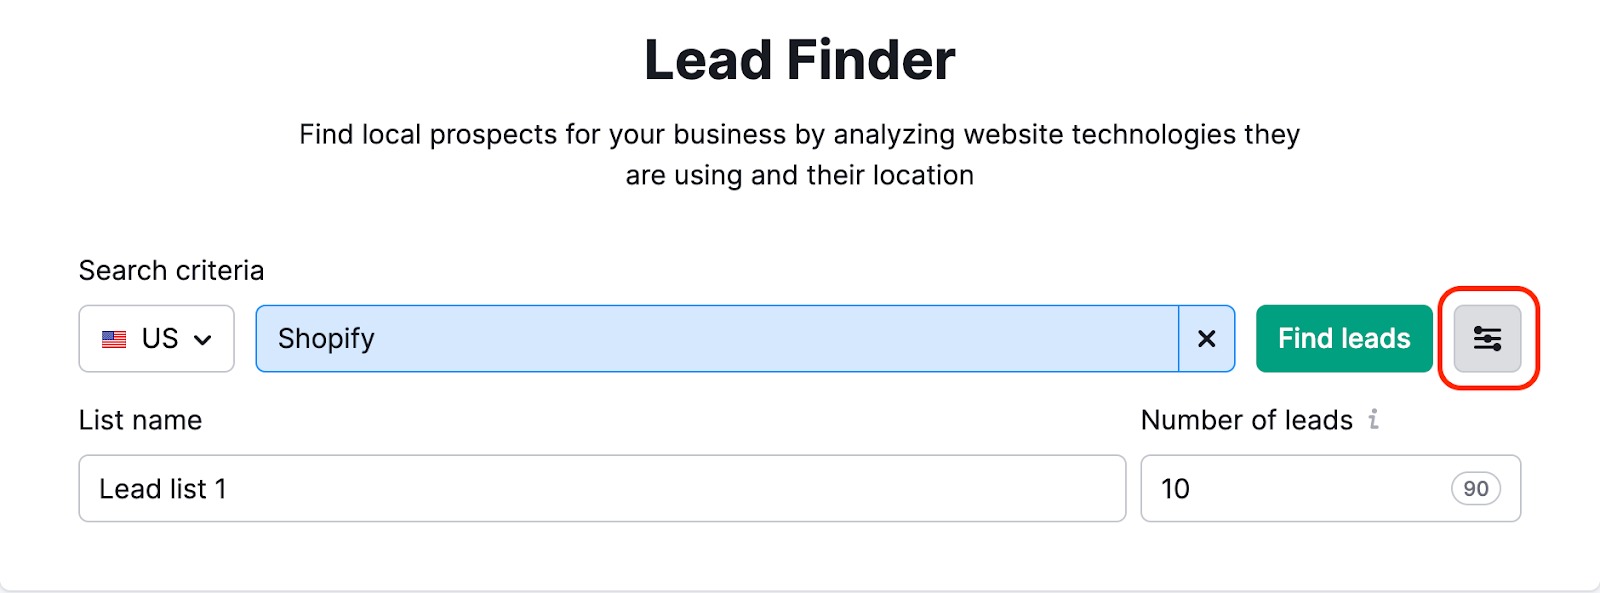 Lead list parameters